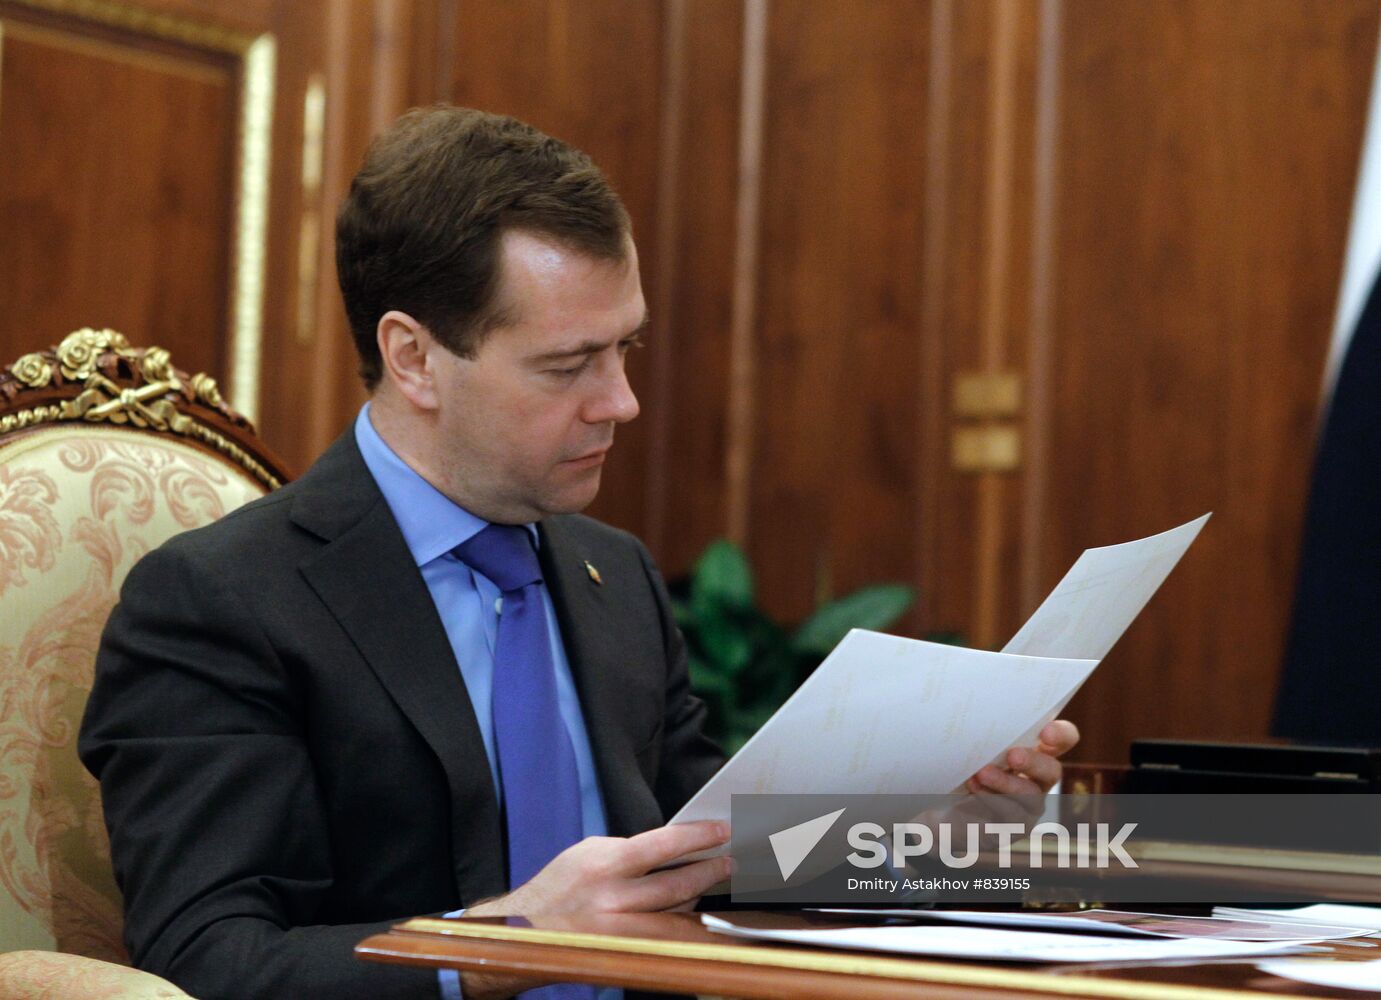 Dmitry Medvedev meets with Viktor Khristenko